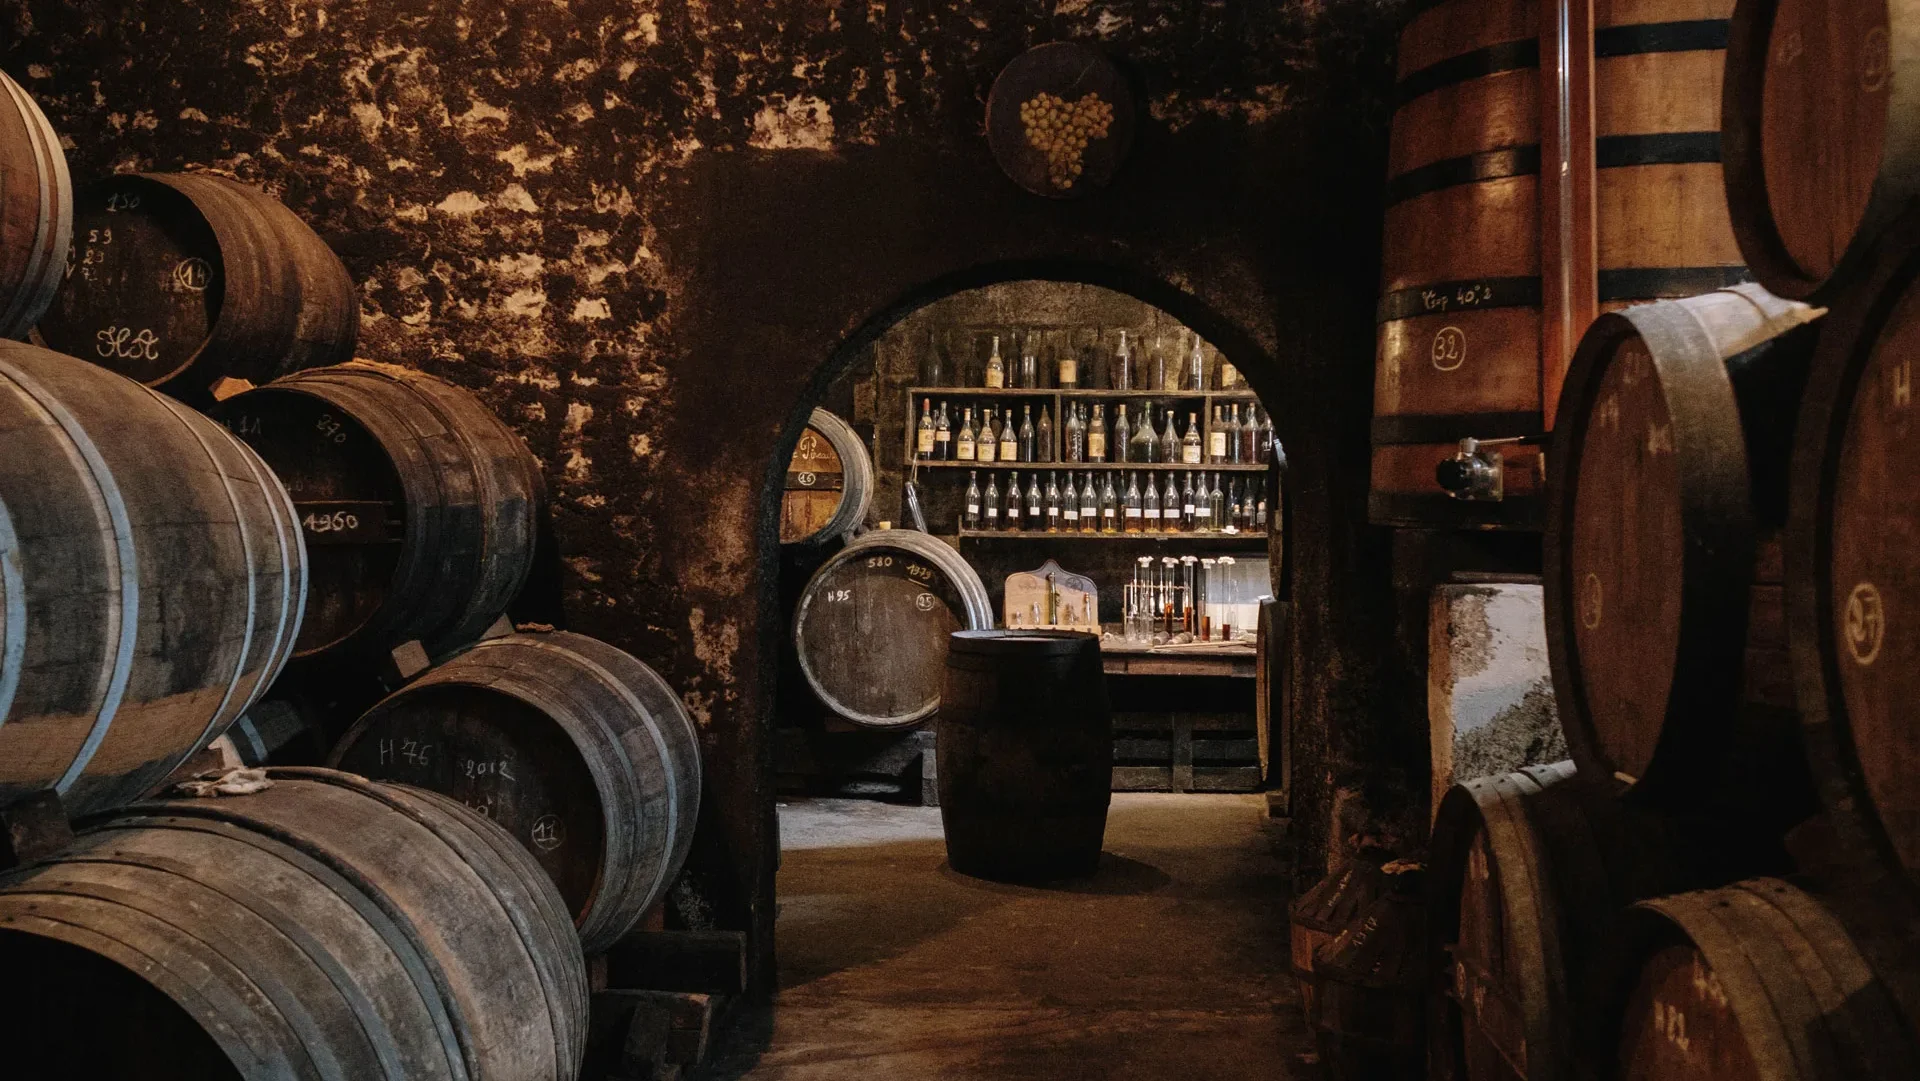 Painturaud Frères ageing cellars in Segonzac, Cognac brandy casks